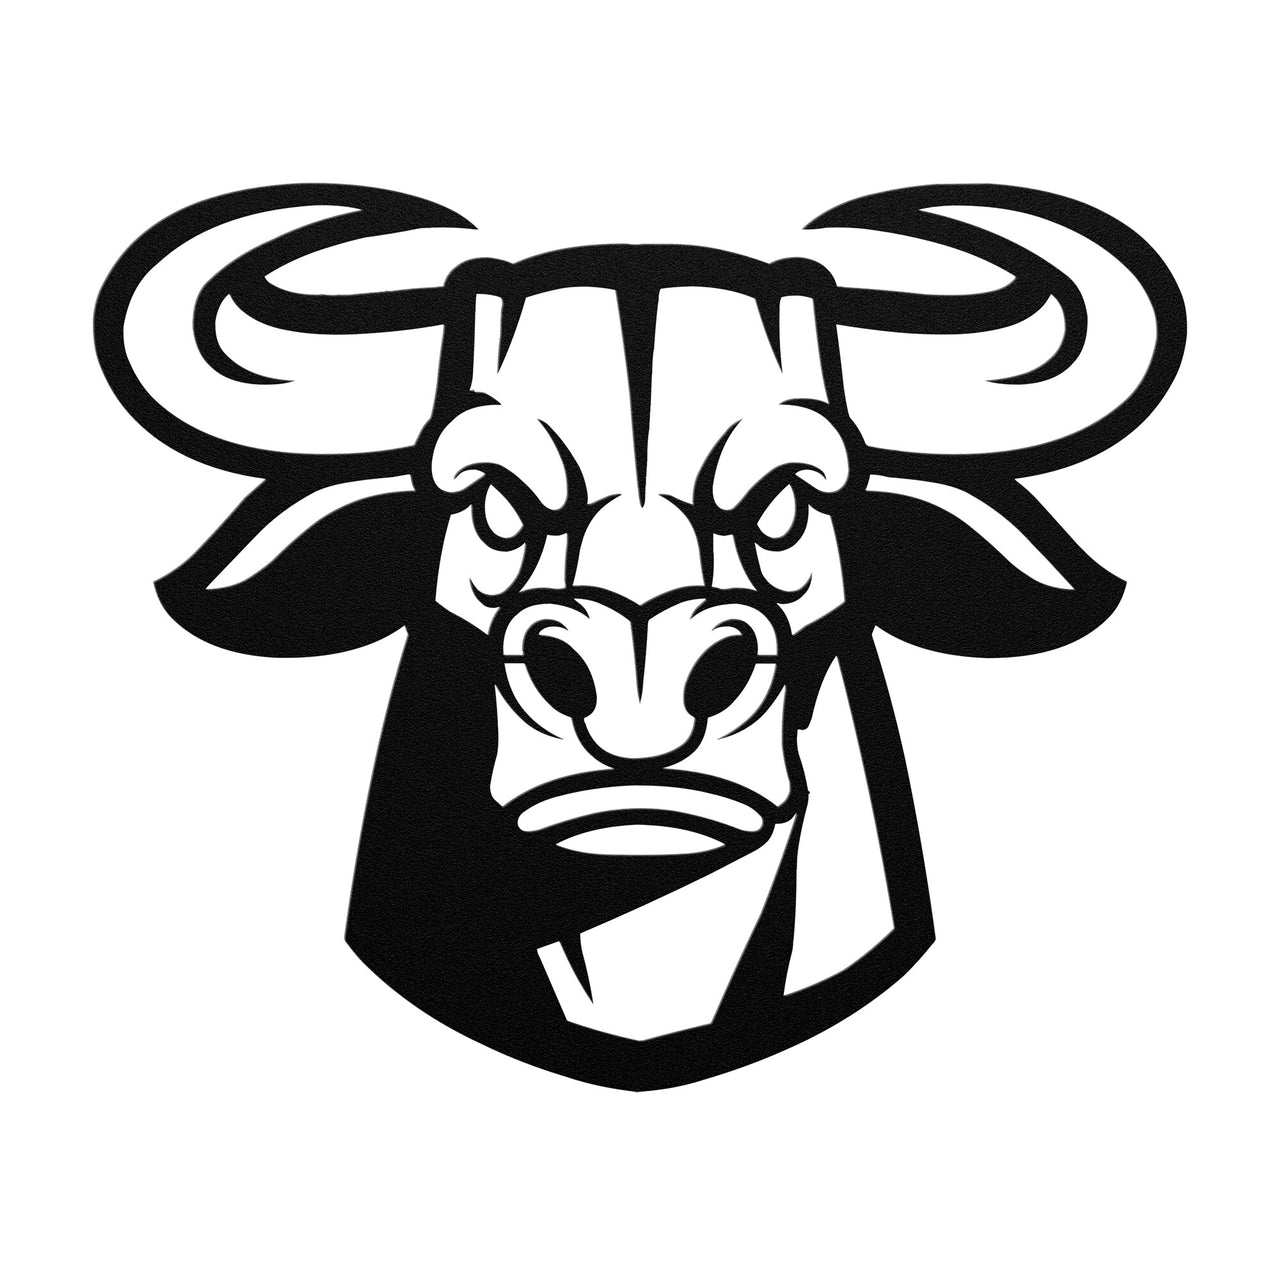 Bull head mascot graphic